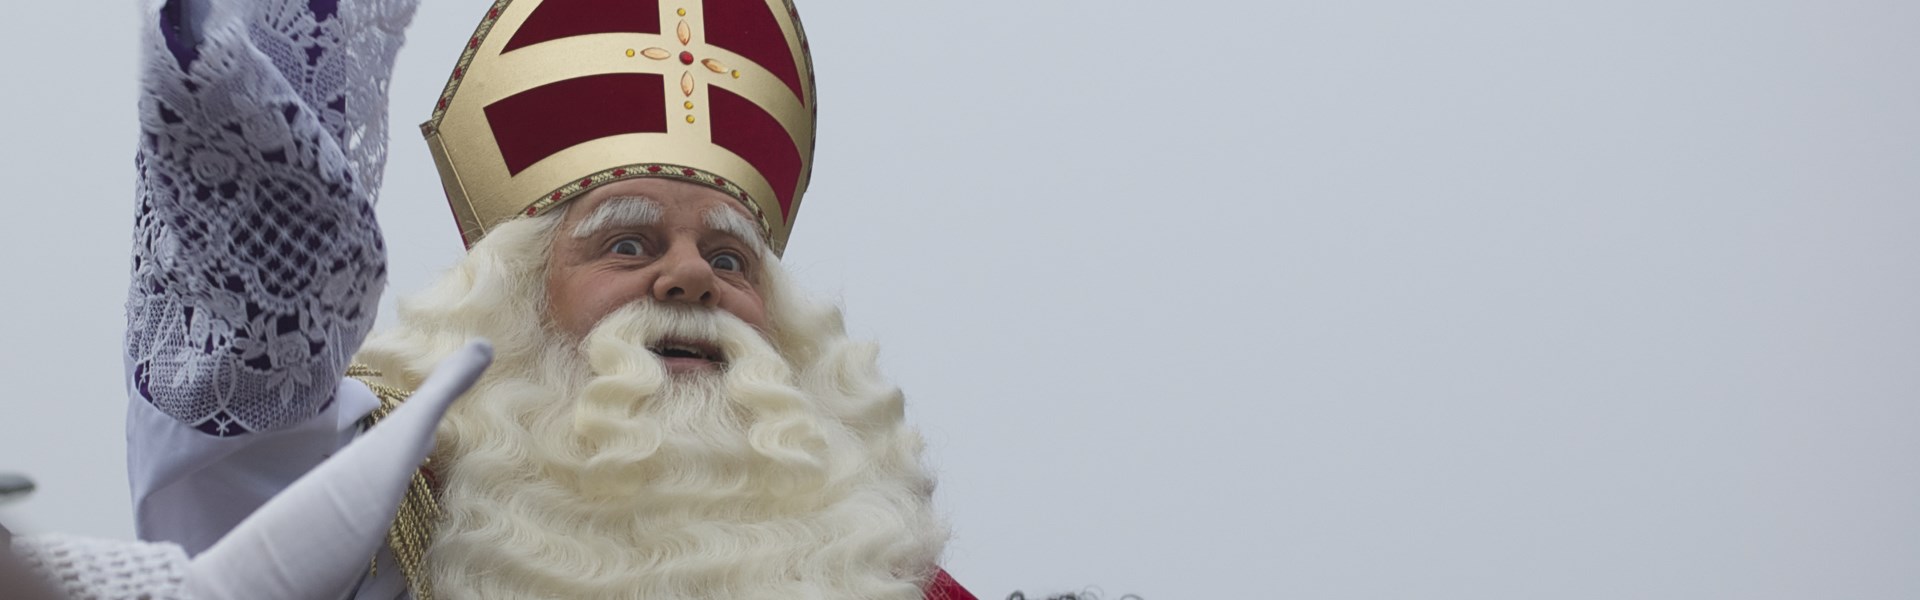 Intocht-Sinterklaas.jpg